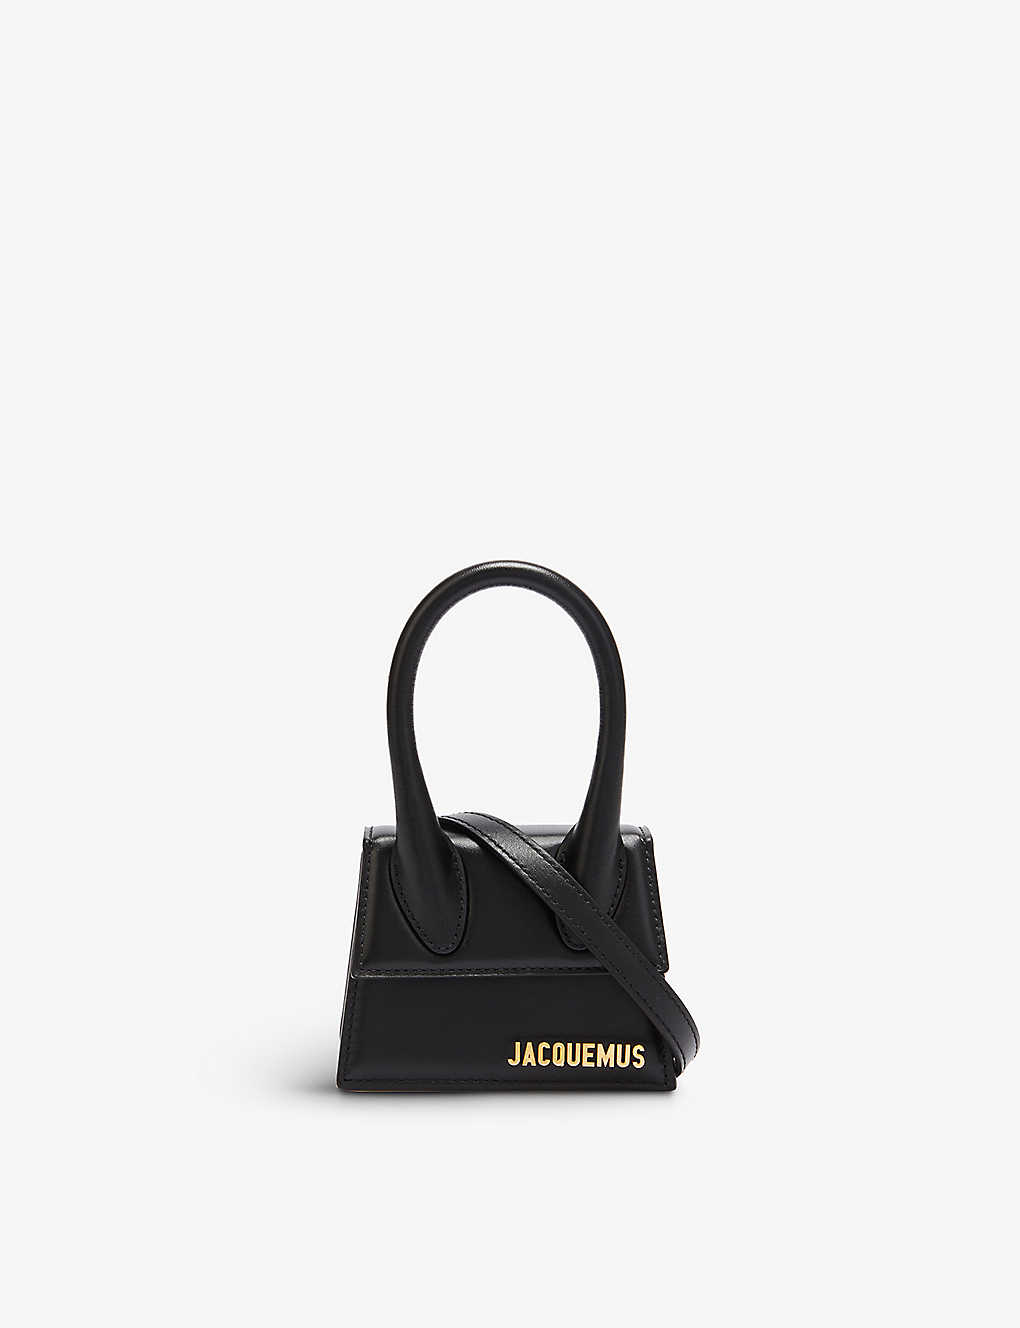 JACQUEMUS - Le Chiquito leather top-handle bag | Selfridges.com